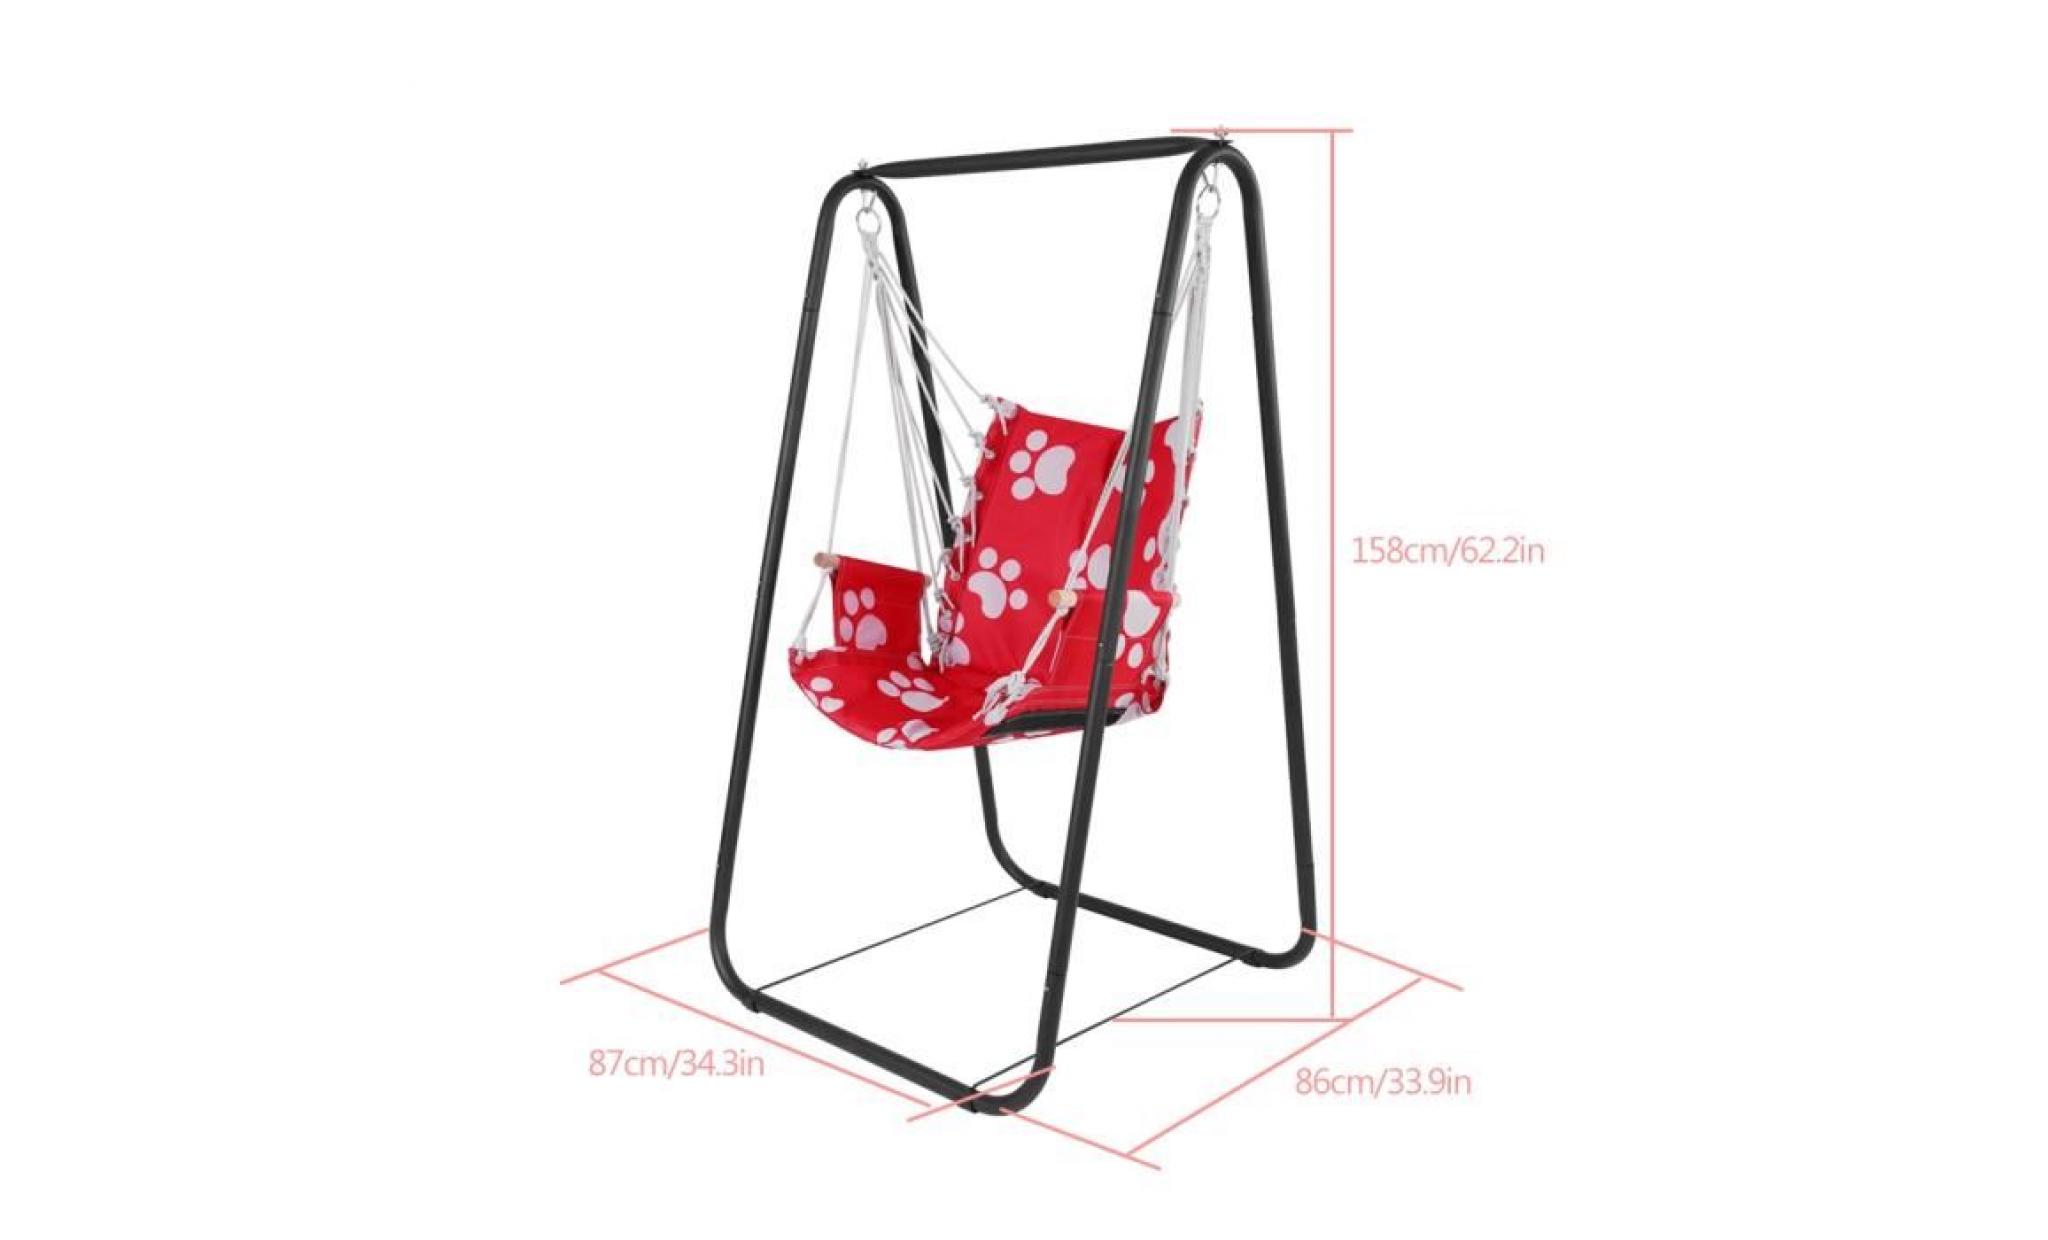 siège de balançoire pour enfant garden yard hamac, siège pivotant intérieur et extérieur avec corde de suspension (rouge) pas cher